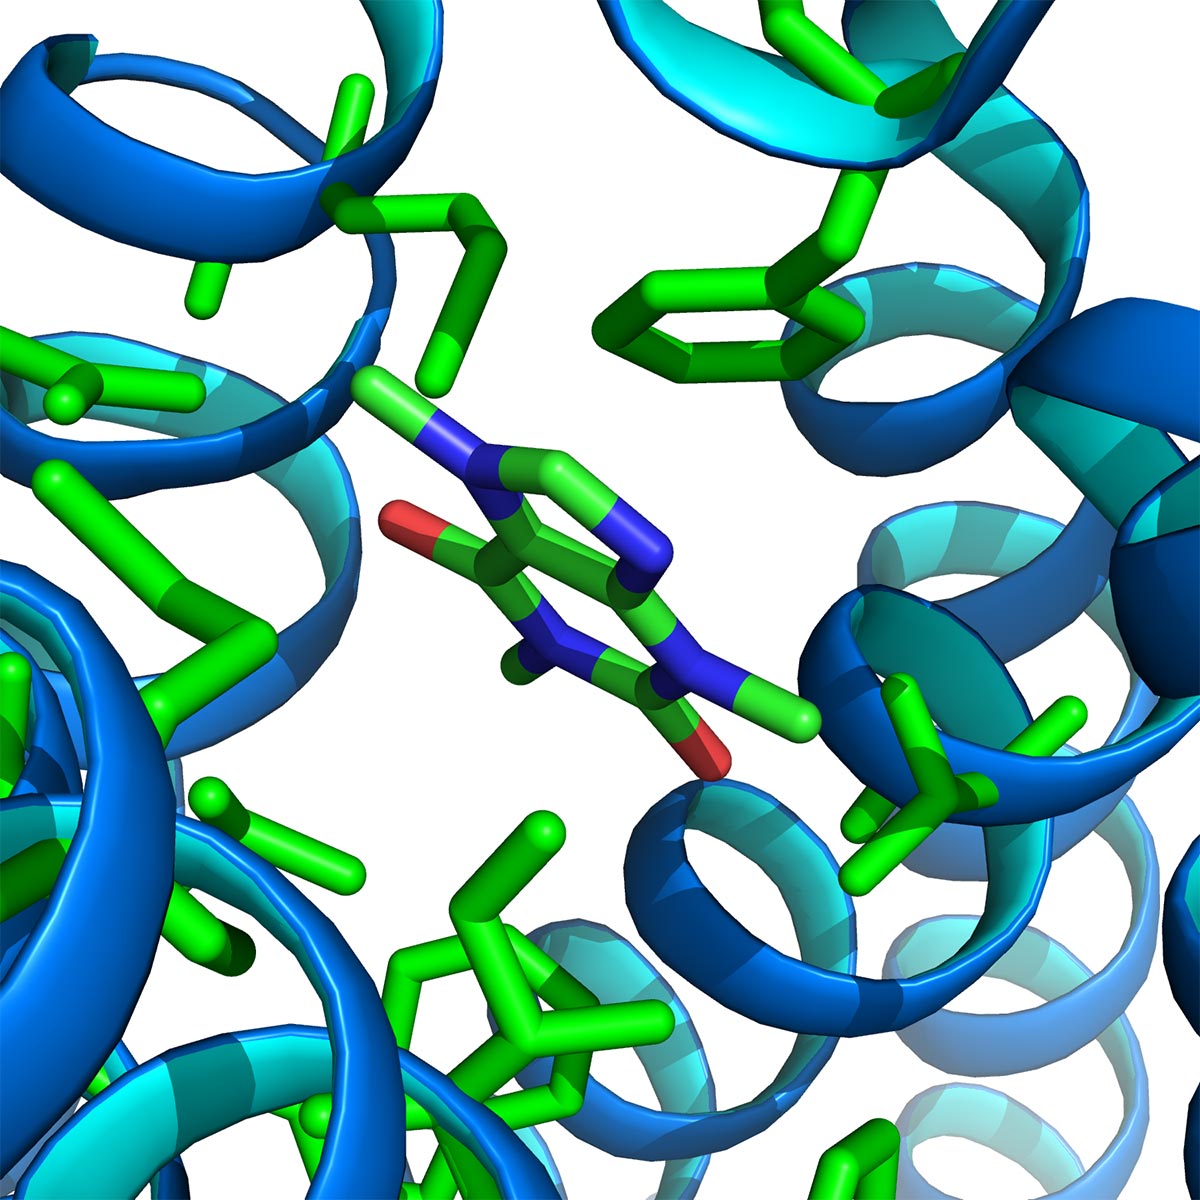 Novel ligand-bound GPCR structures